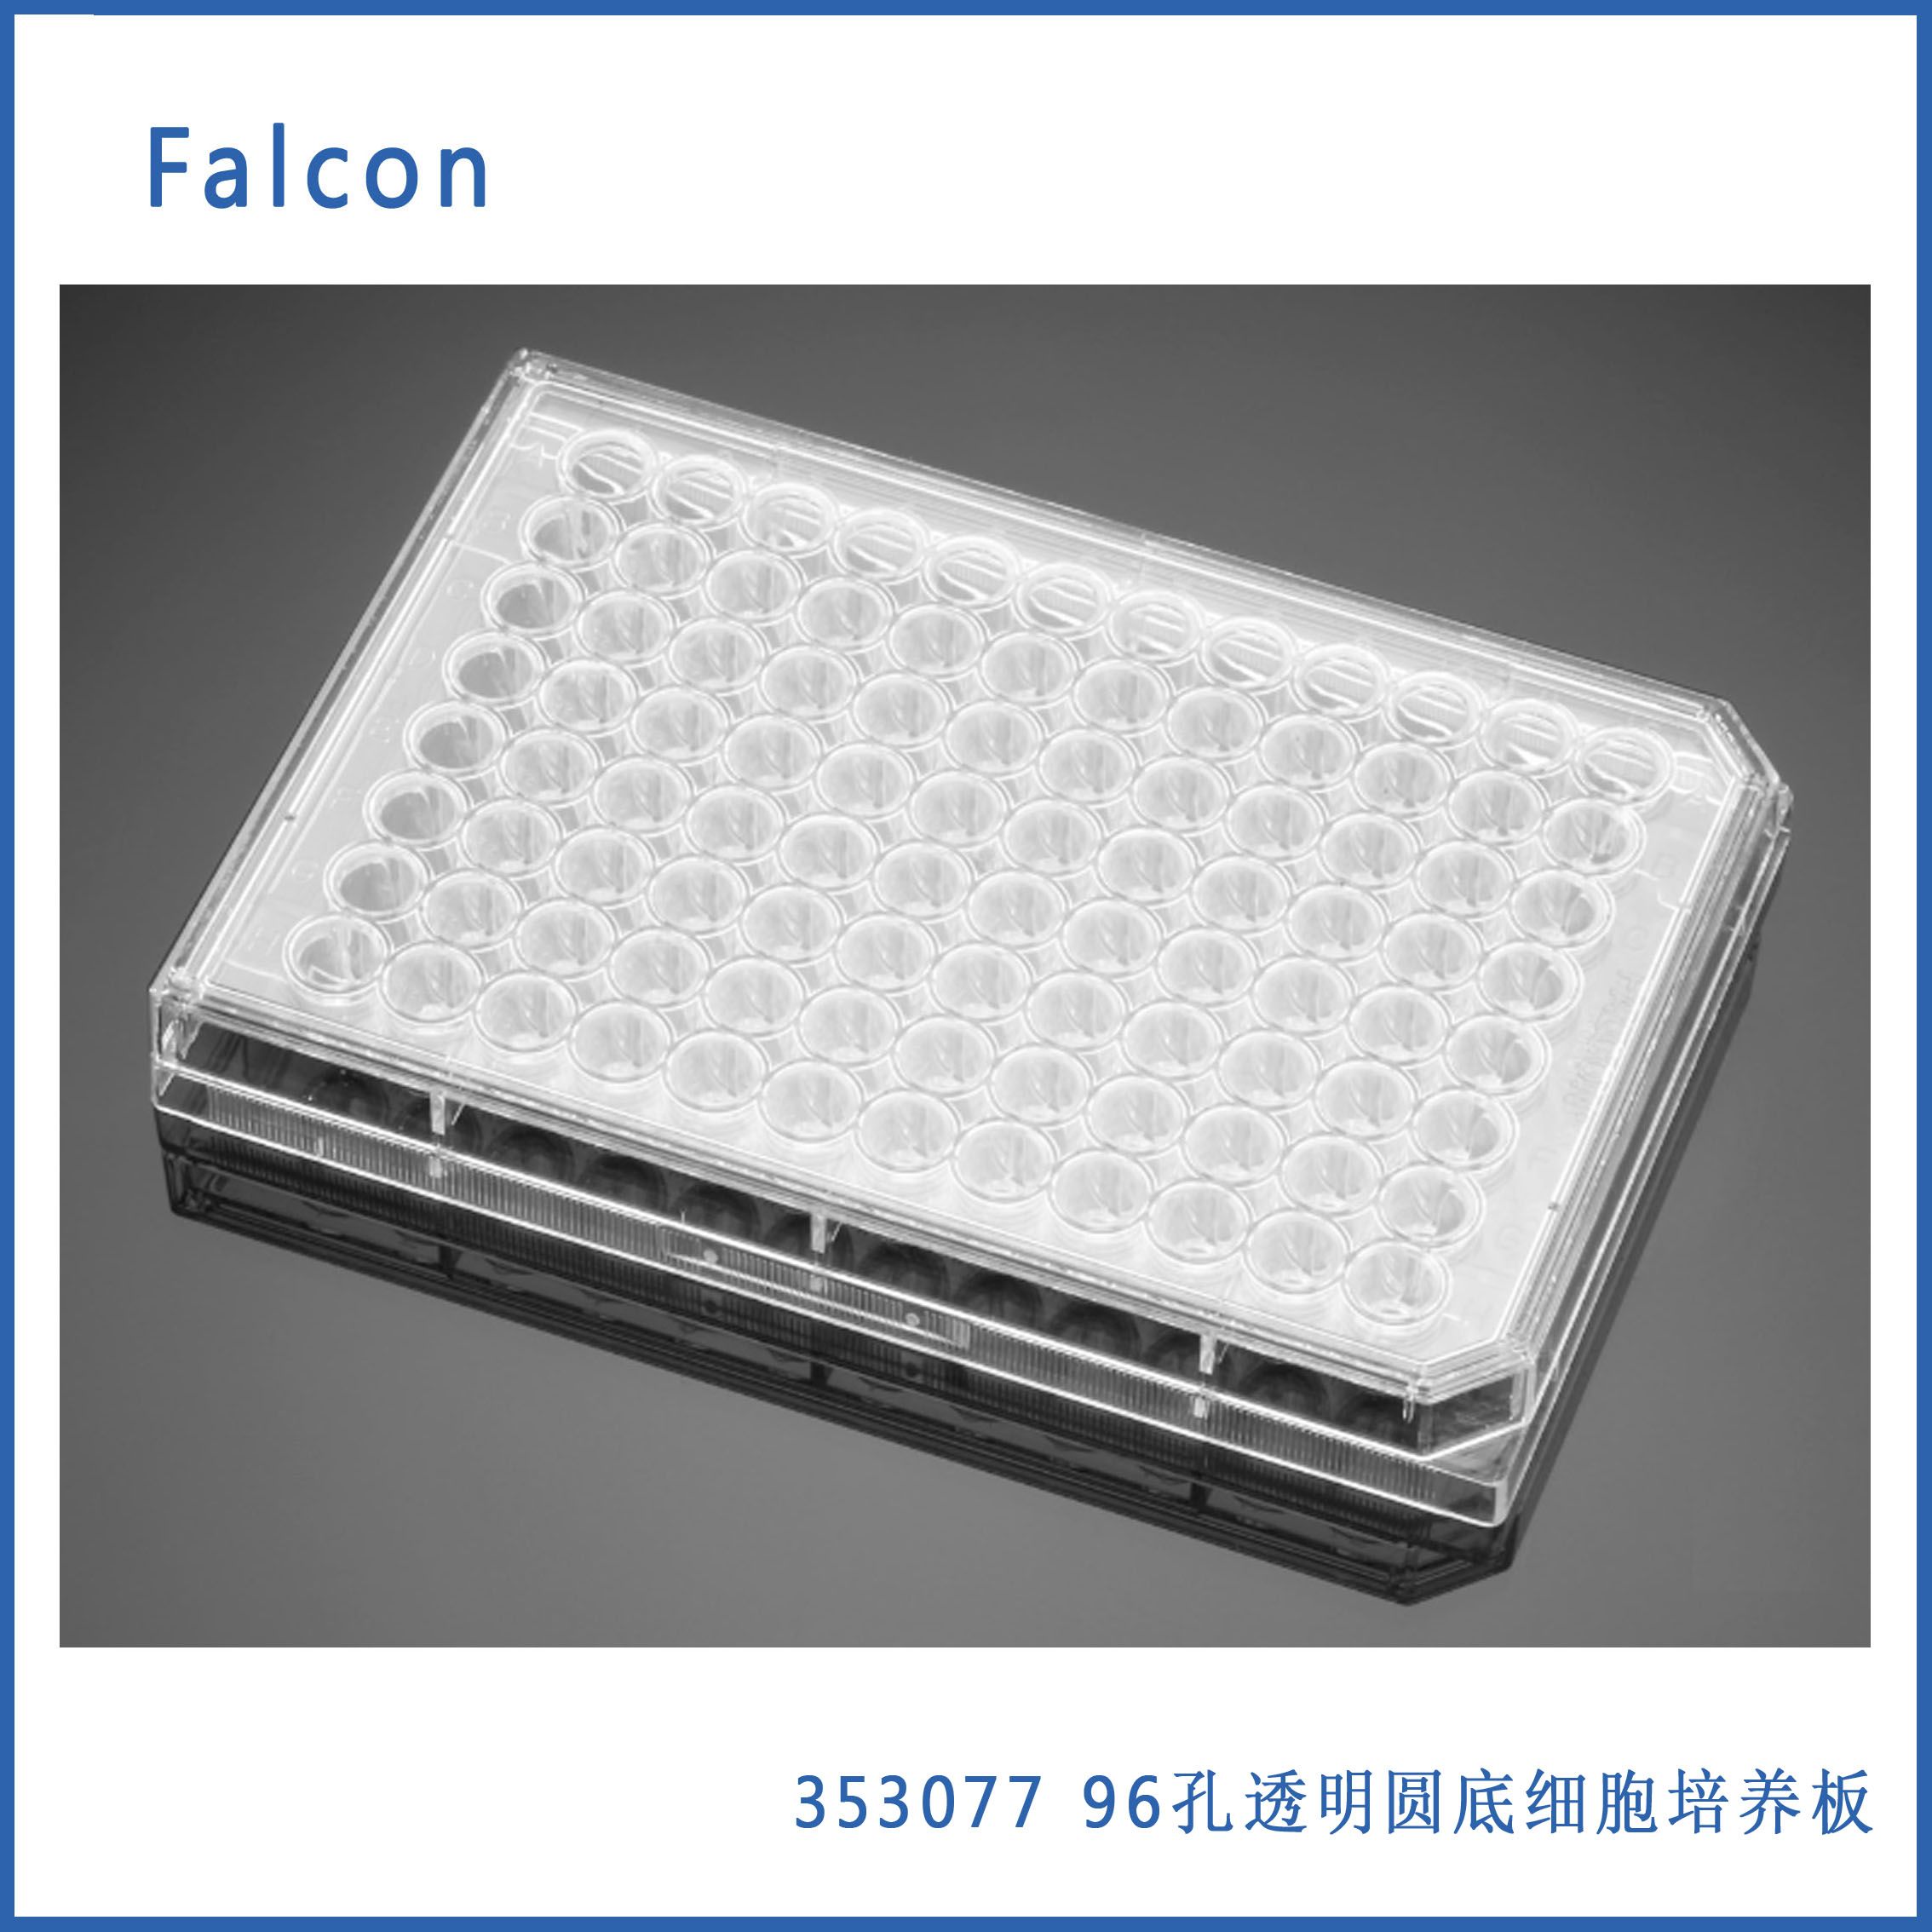 96孔细胞培养板 U形底带盖 Faclon 353077 现货